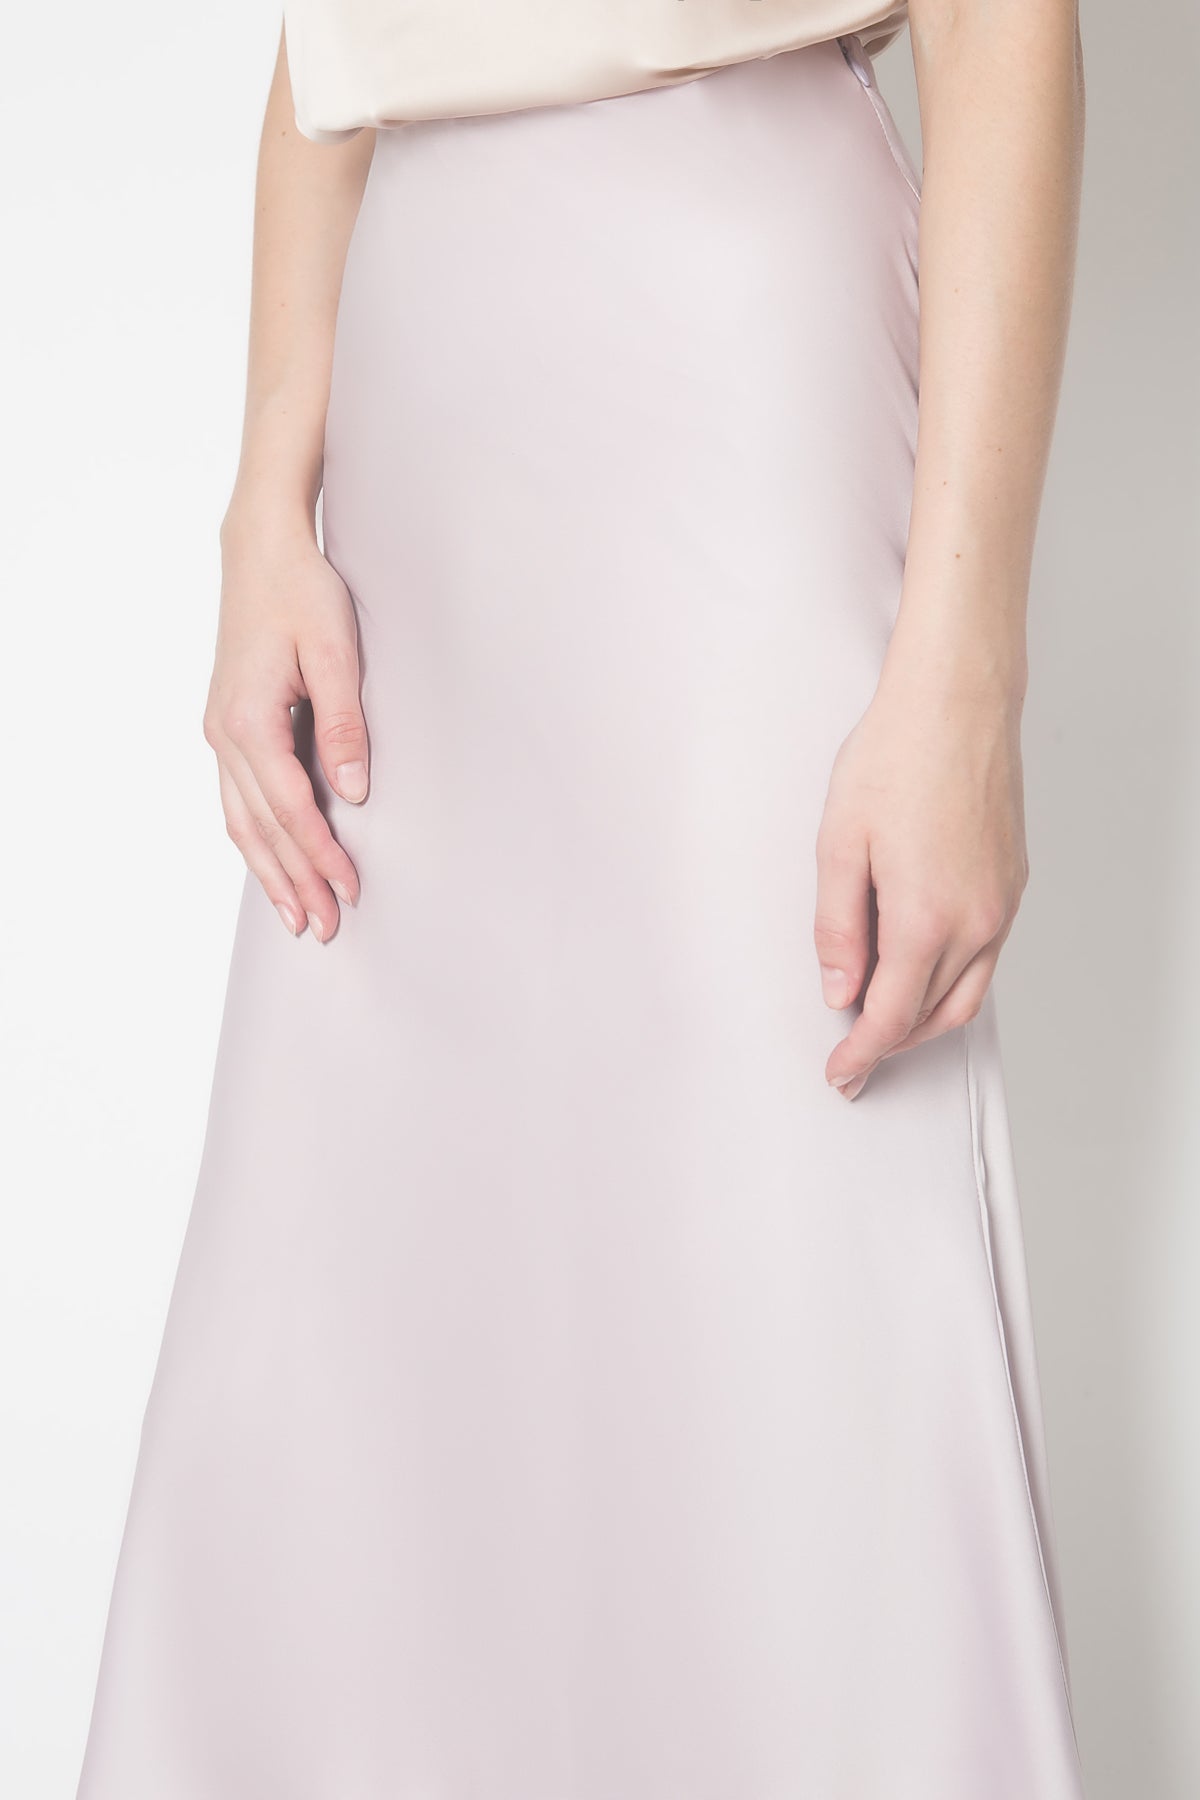 Cami Midi Skirt in Lilac